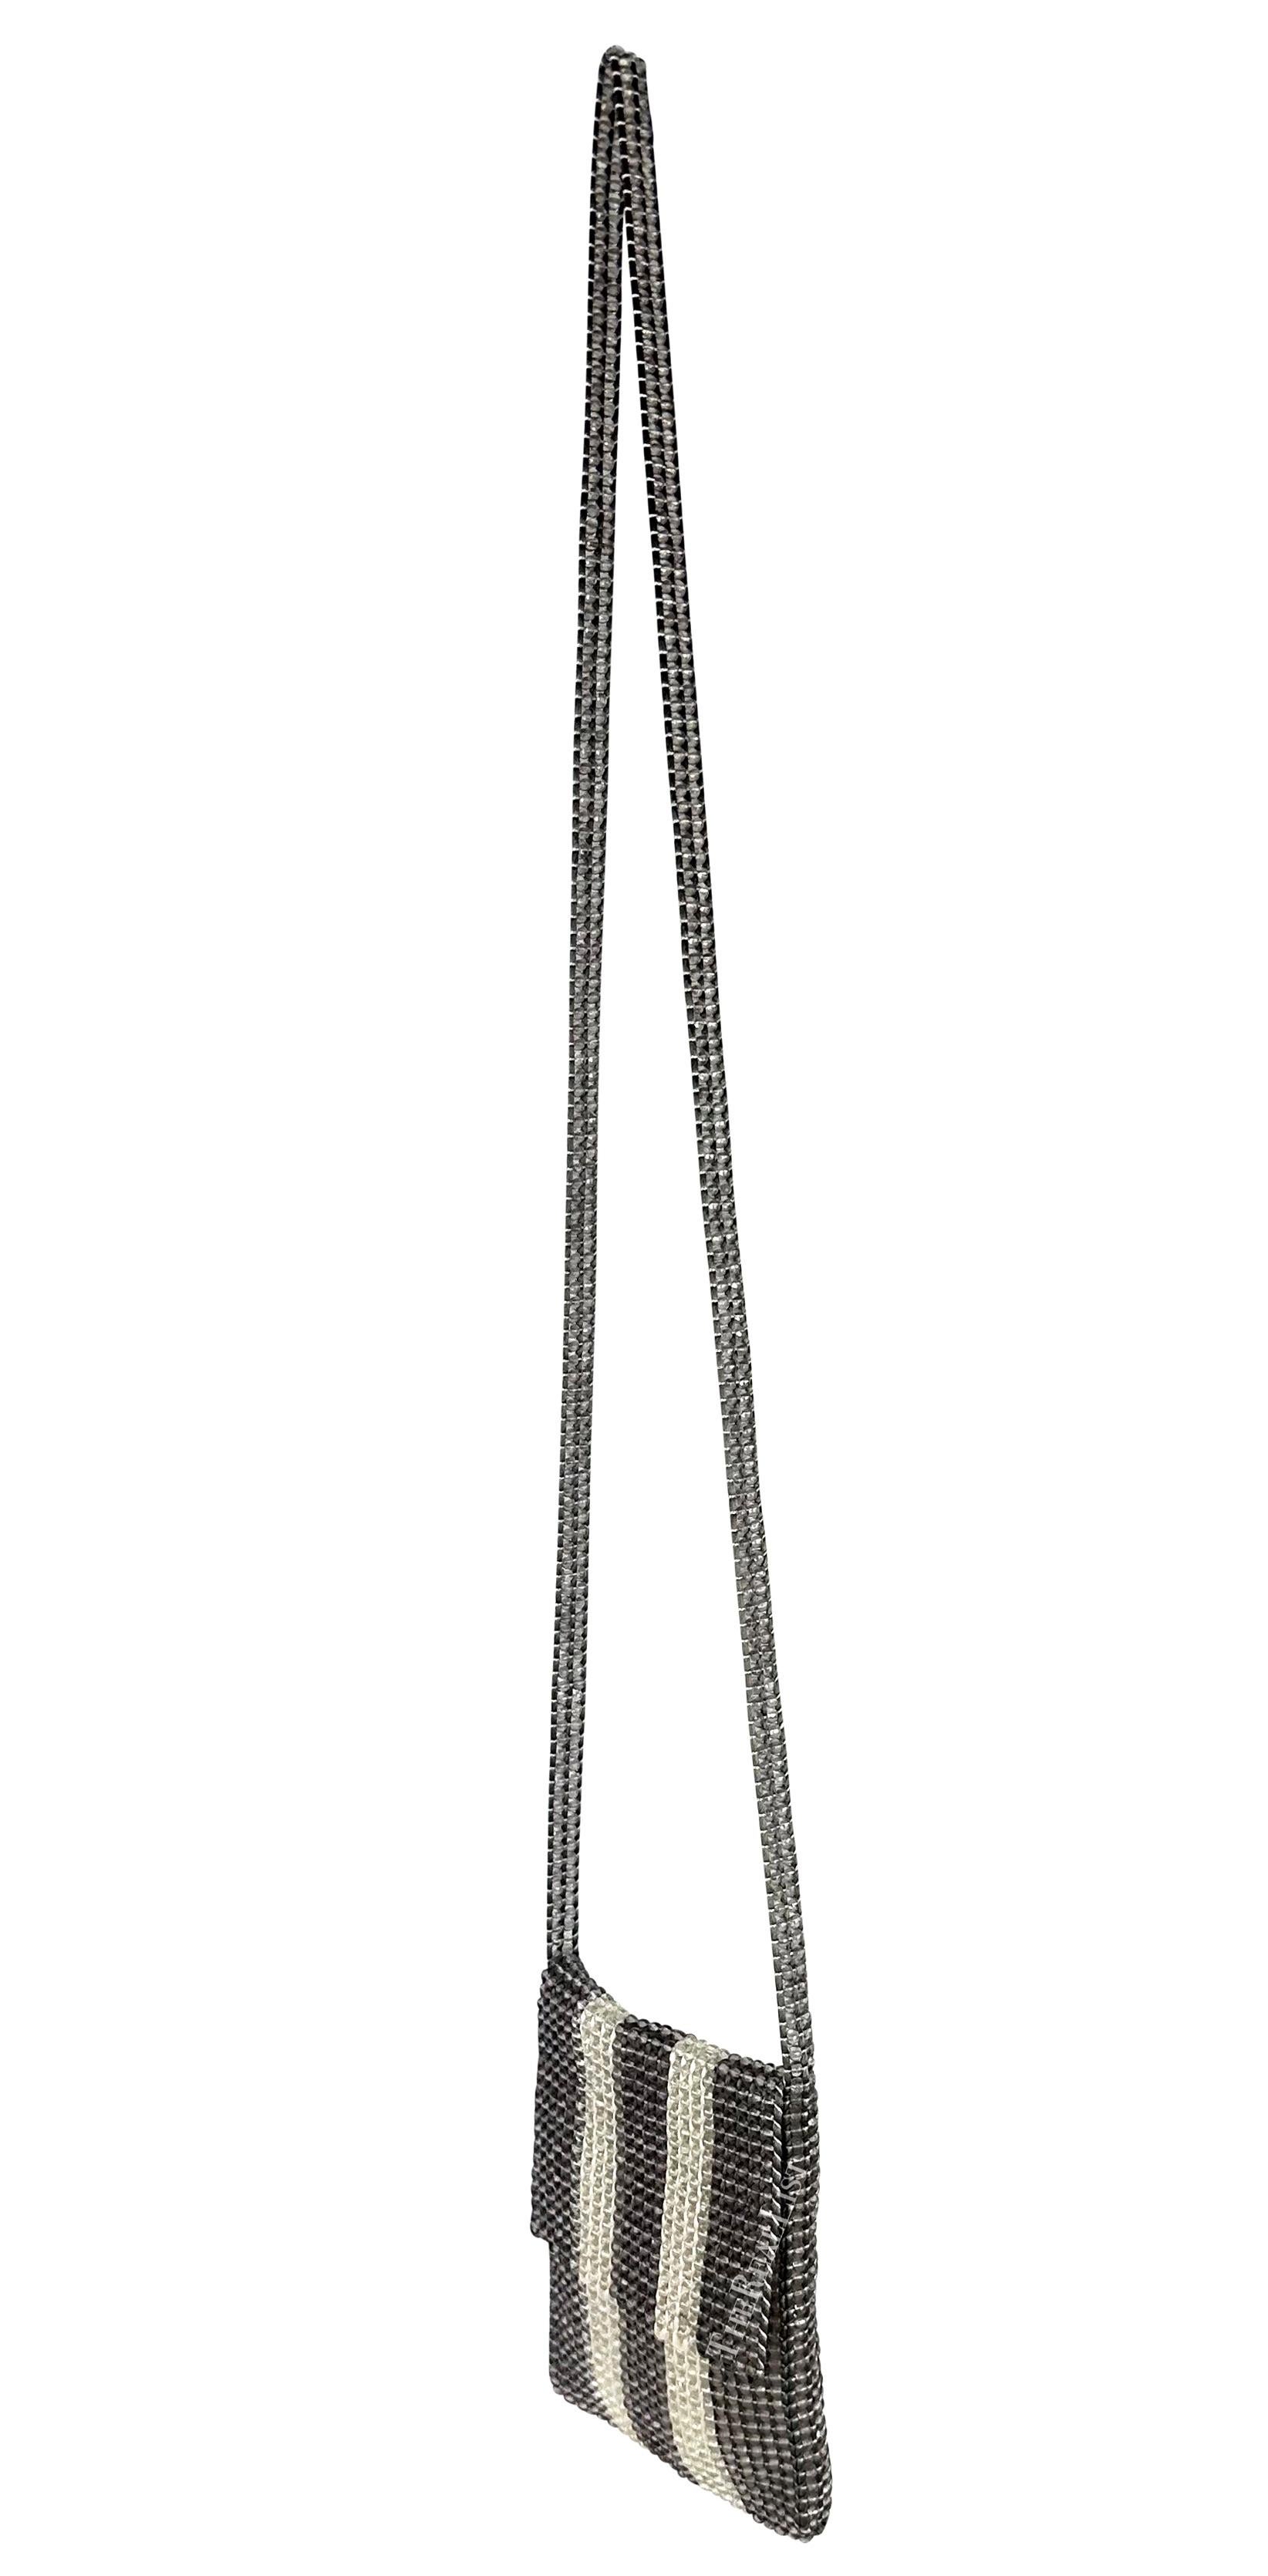 Whiting présente un fabuleux sac crossbody à perles gris et blanc de Giorgio Armani. Datant de la fin des années 1990, ce mini sac chic est entièrement constitué de perles de cristal grises et blanches et se ferme par un rabat. Accessoire parfait